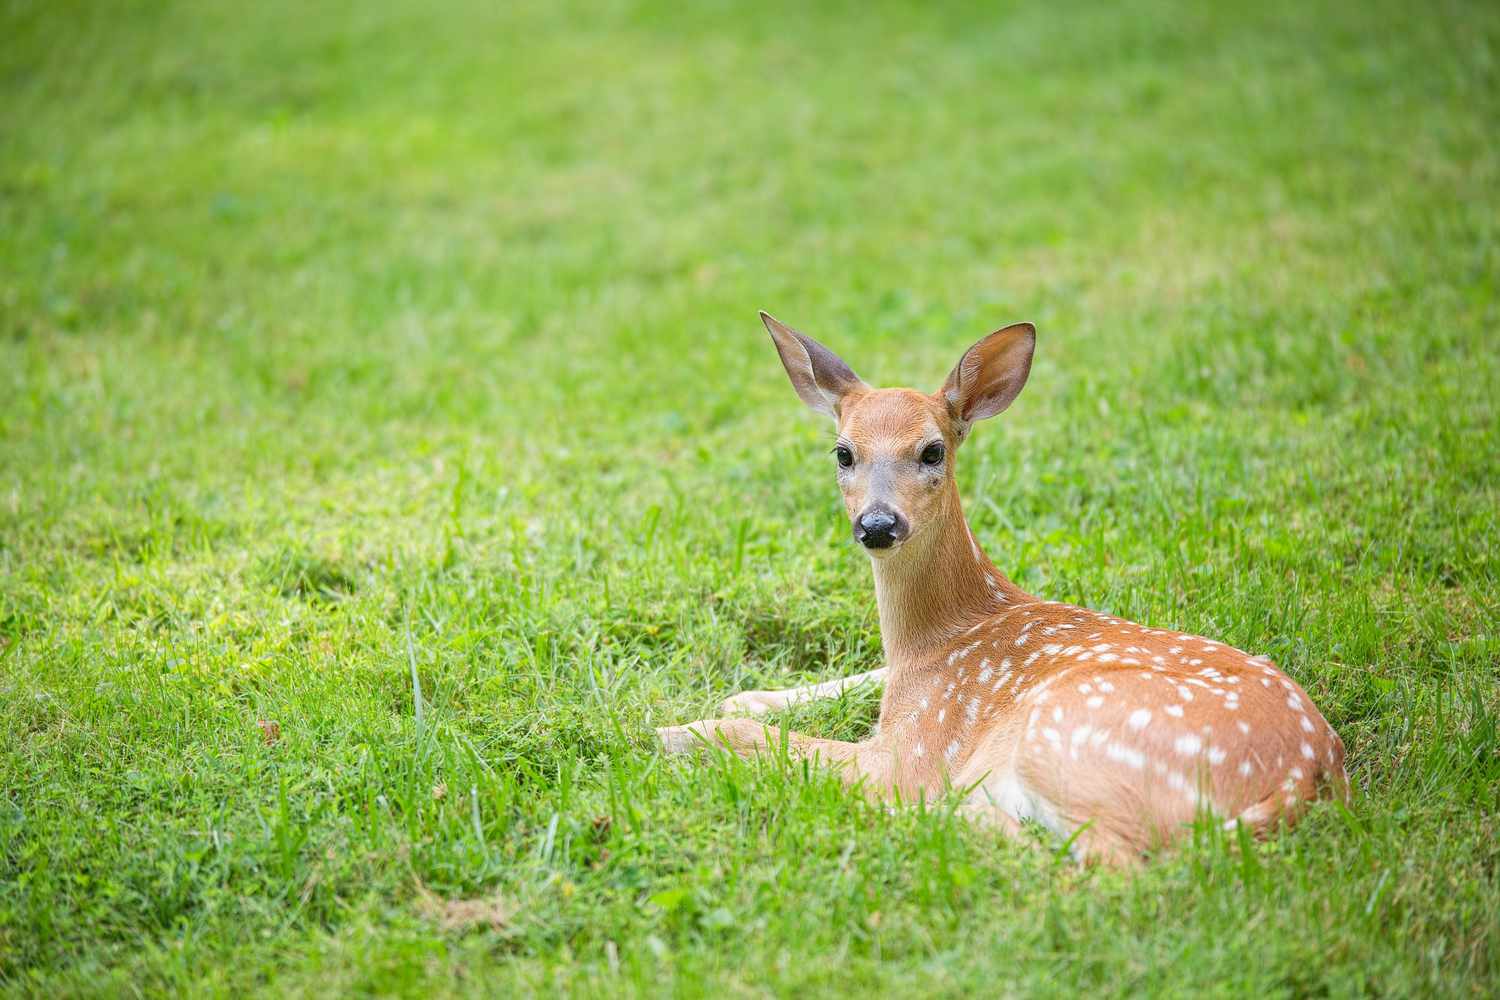 Deer fawn lying in a grassy field